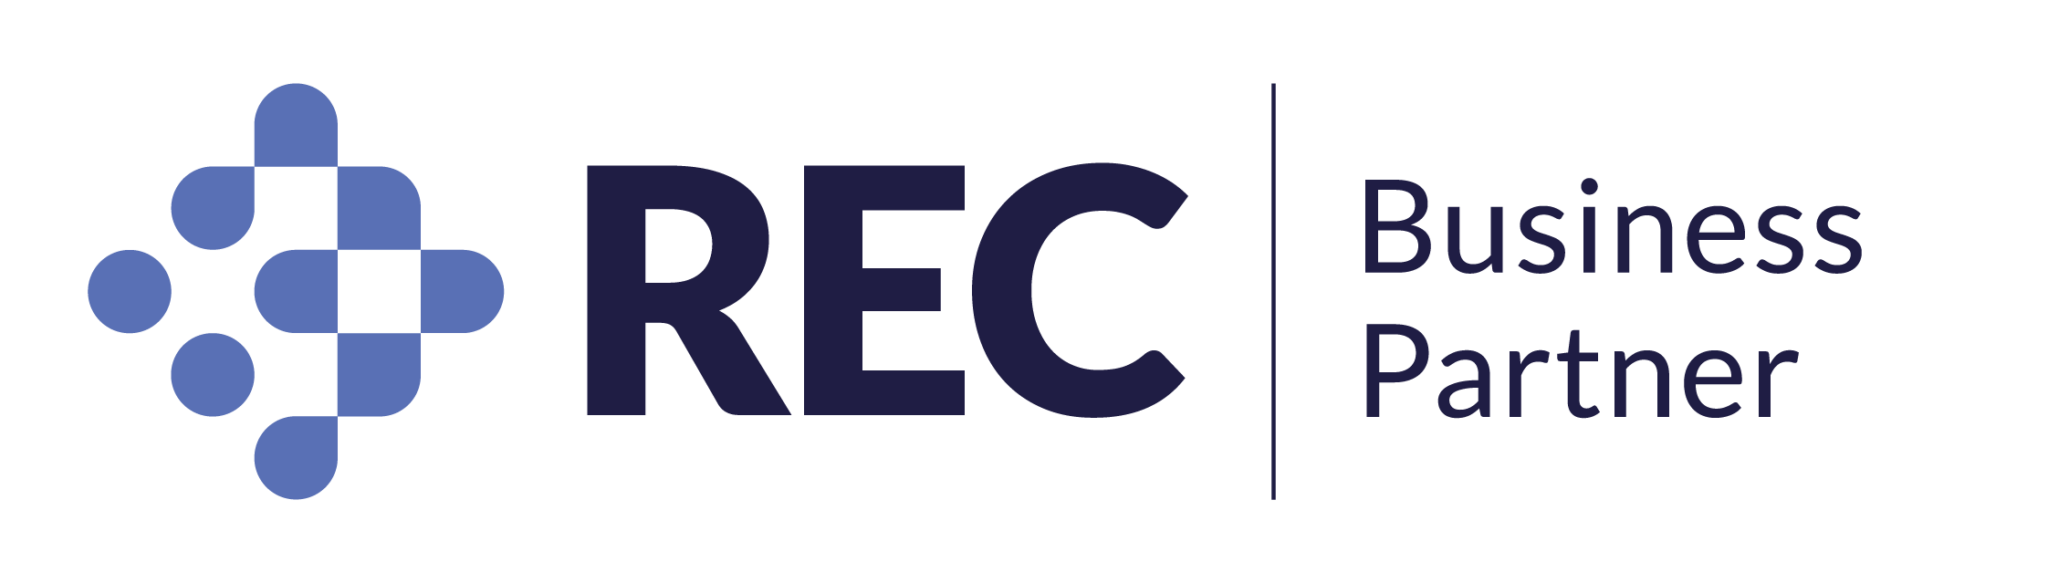 updatedge an REC Certified Business Partner